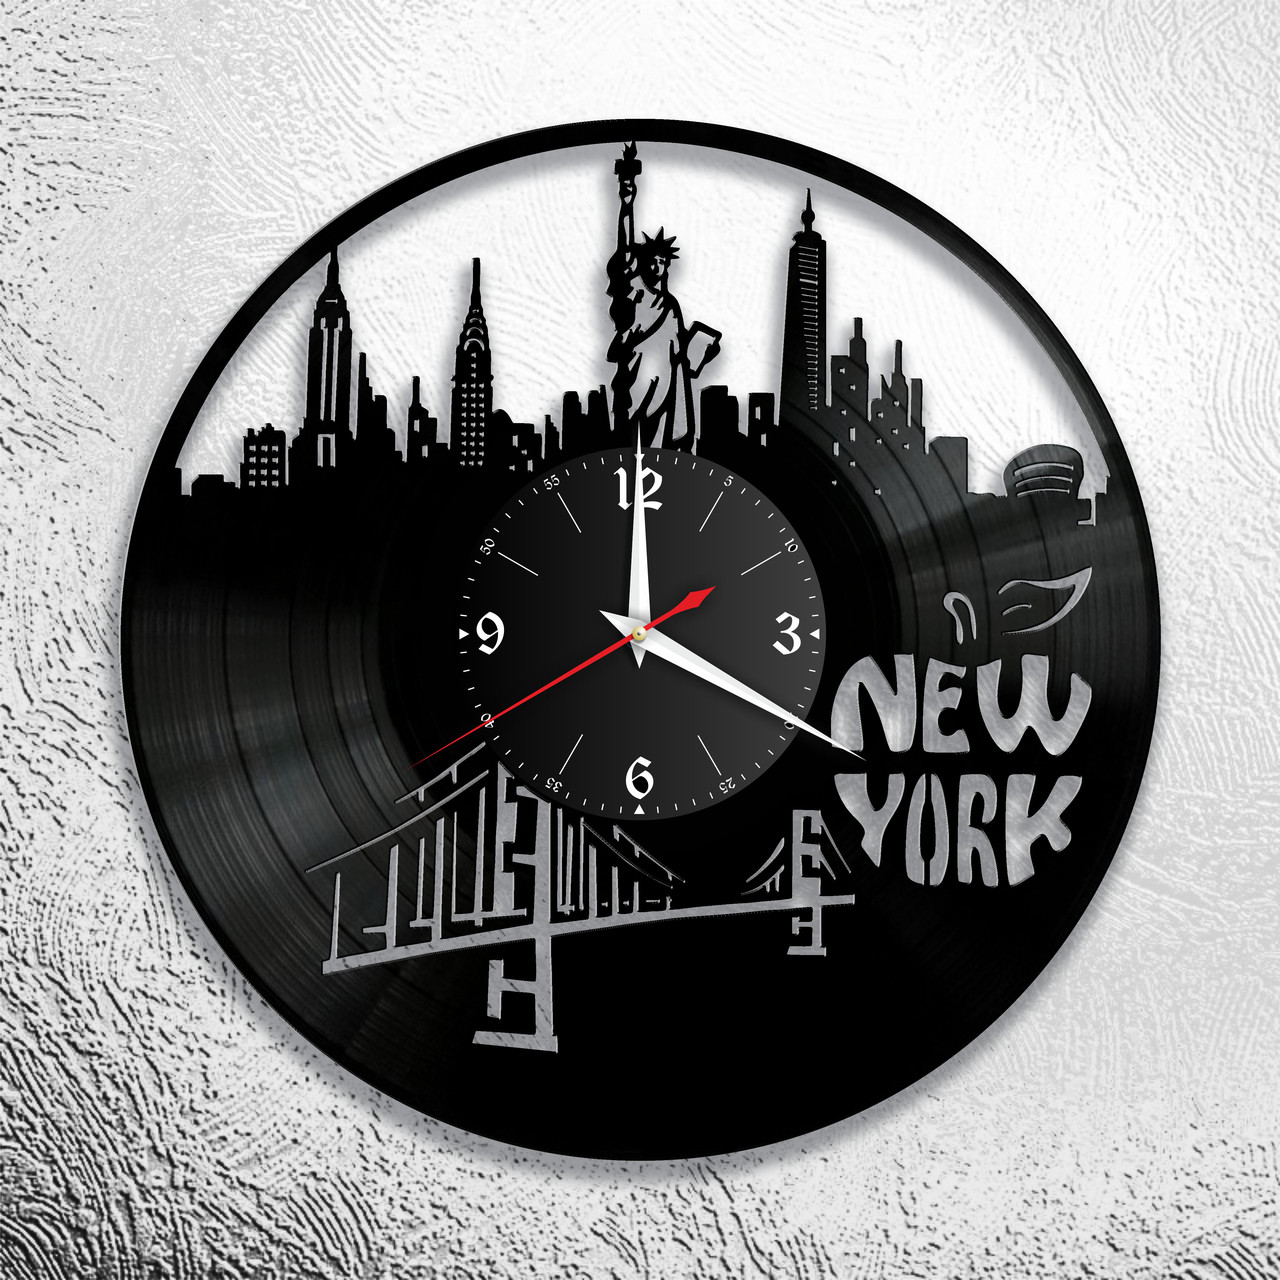 Оригинальные часы из виниловых пластинок  "Нью Йорк" версия 2, фото 1